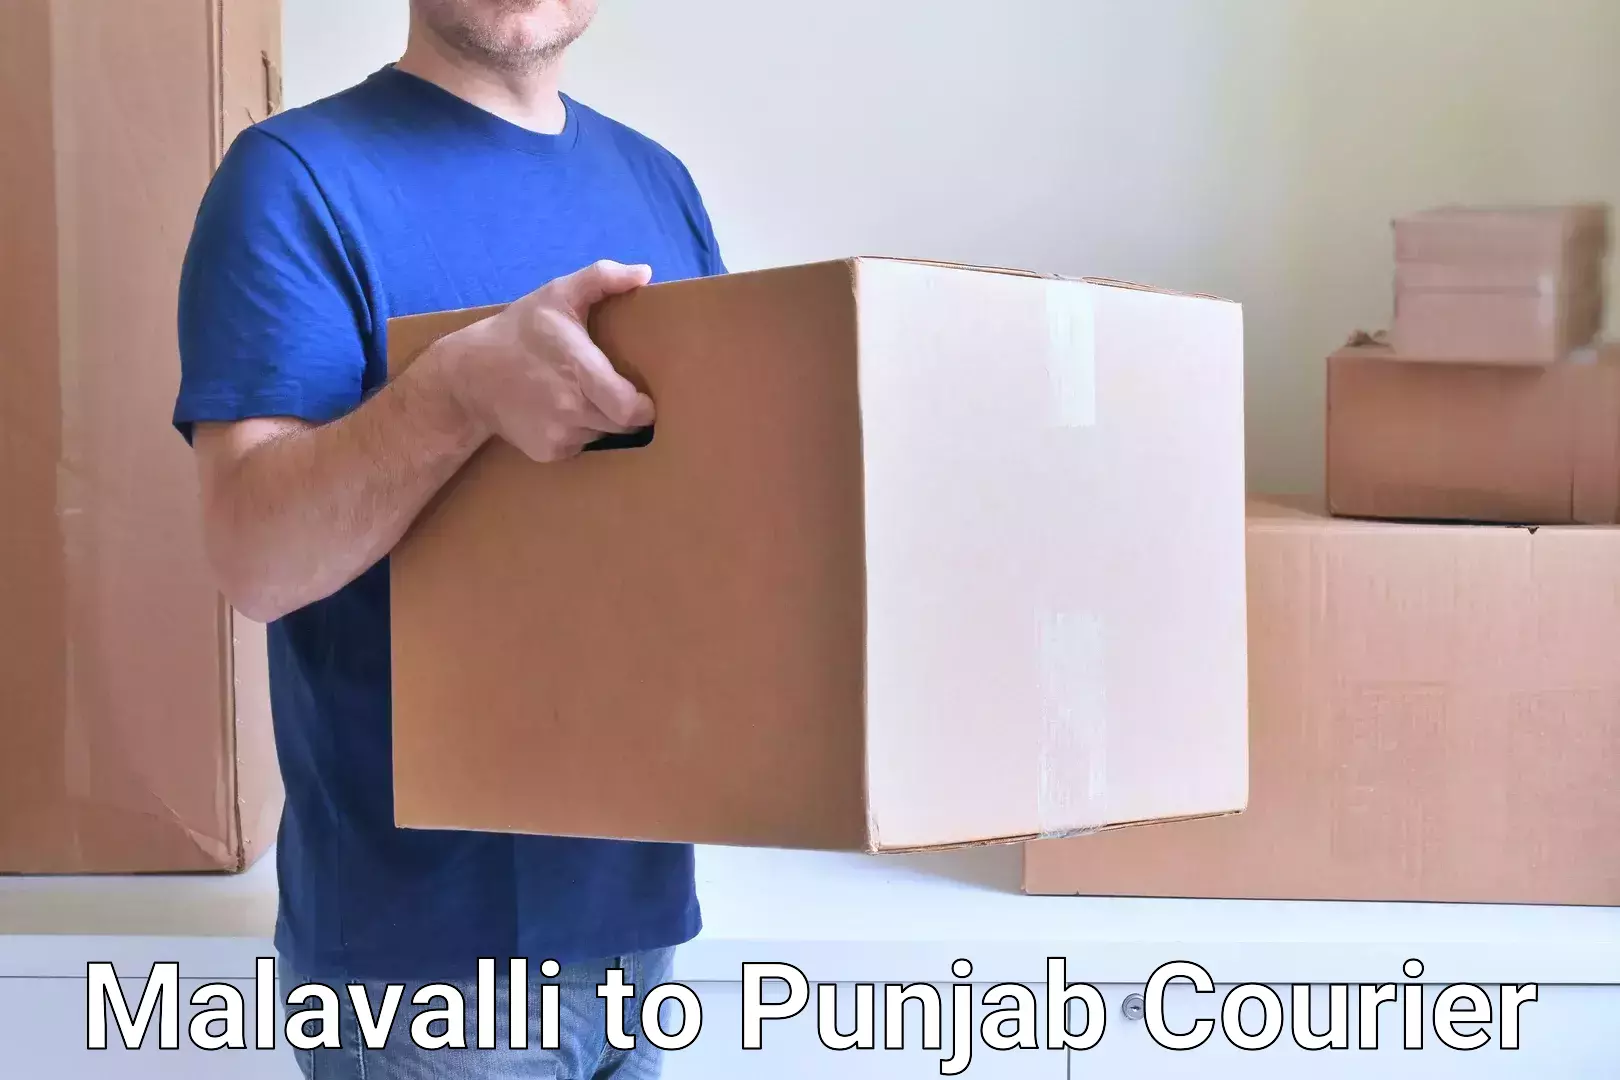 Cargo courier service Malavalli to Sirhind Fatehgarh